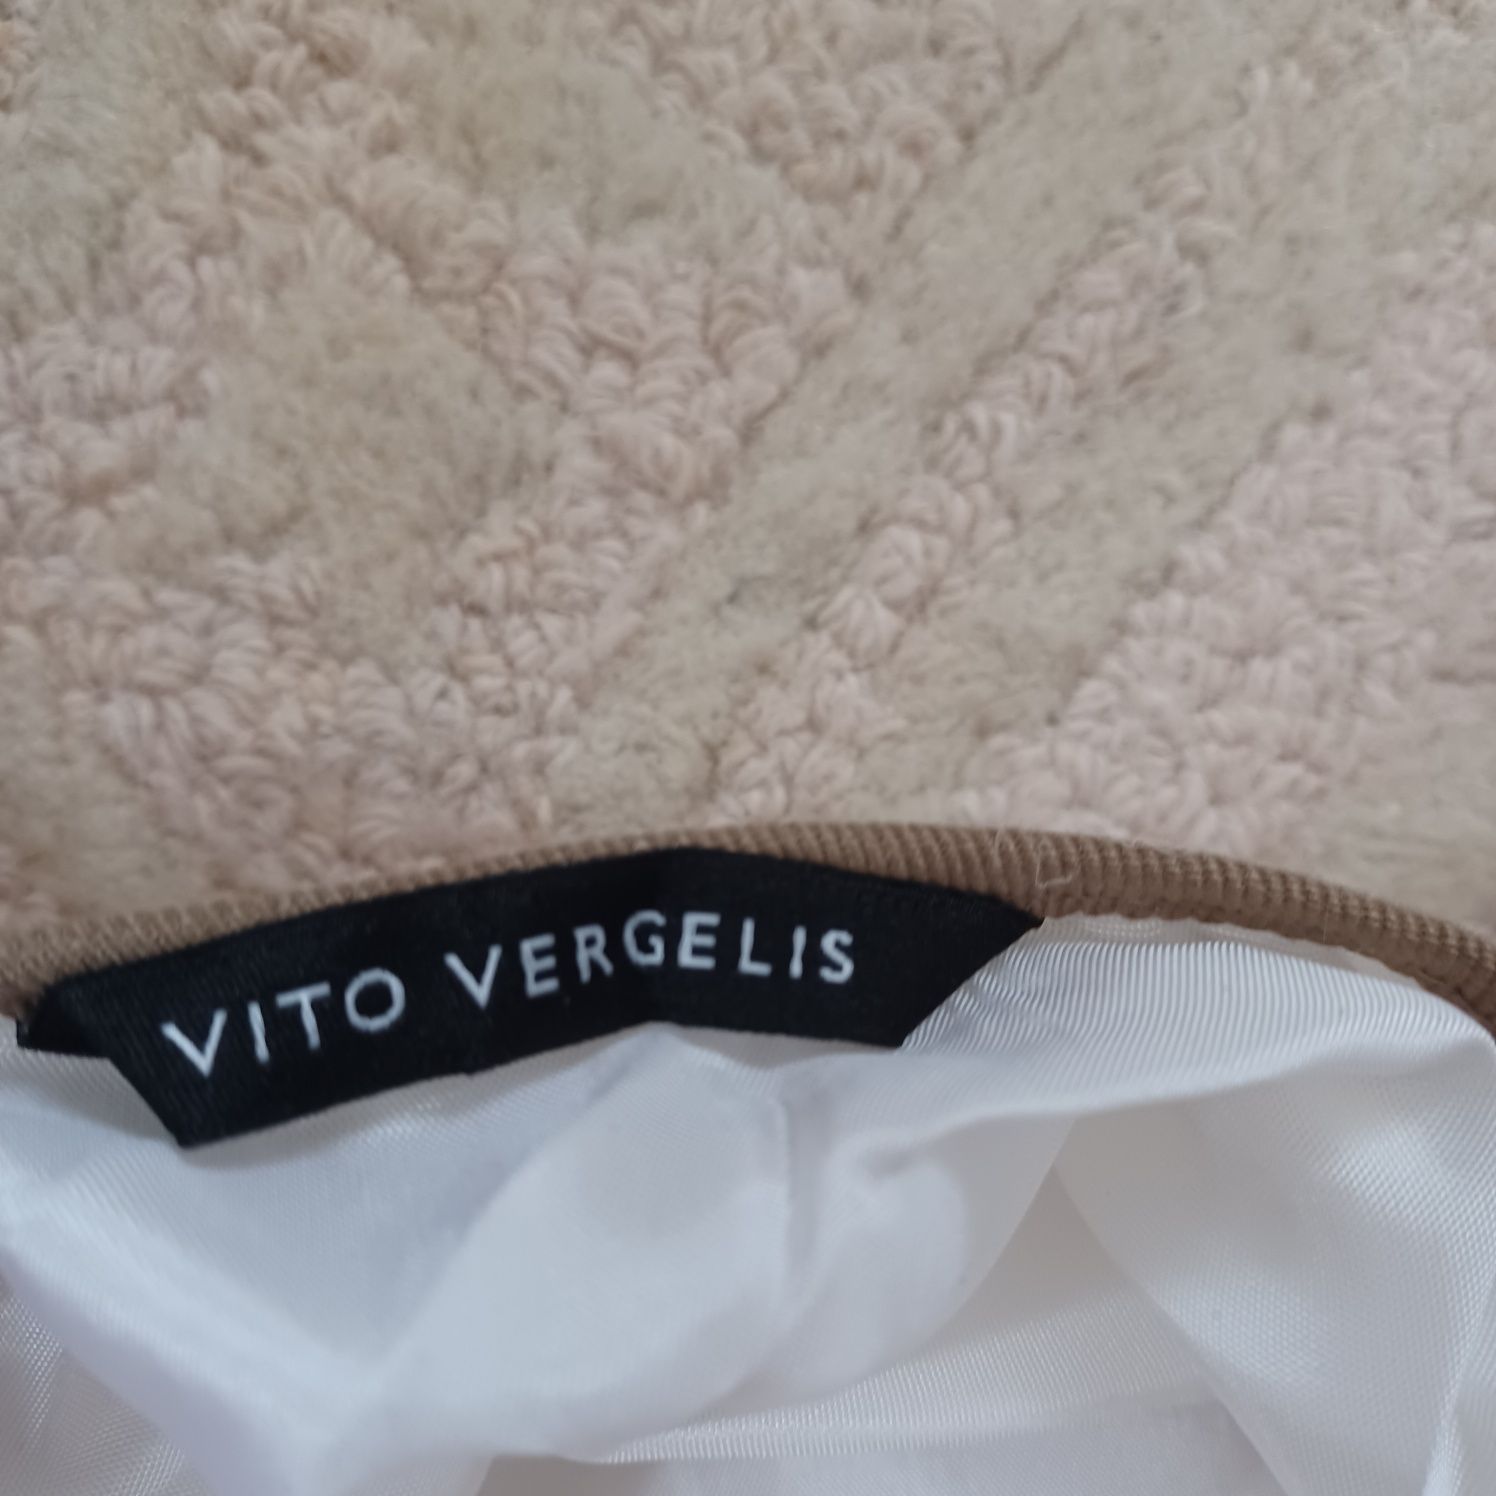 Spódnica Vito Vergelus tiulowa długa jak nowa M/L/-80% ceny